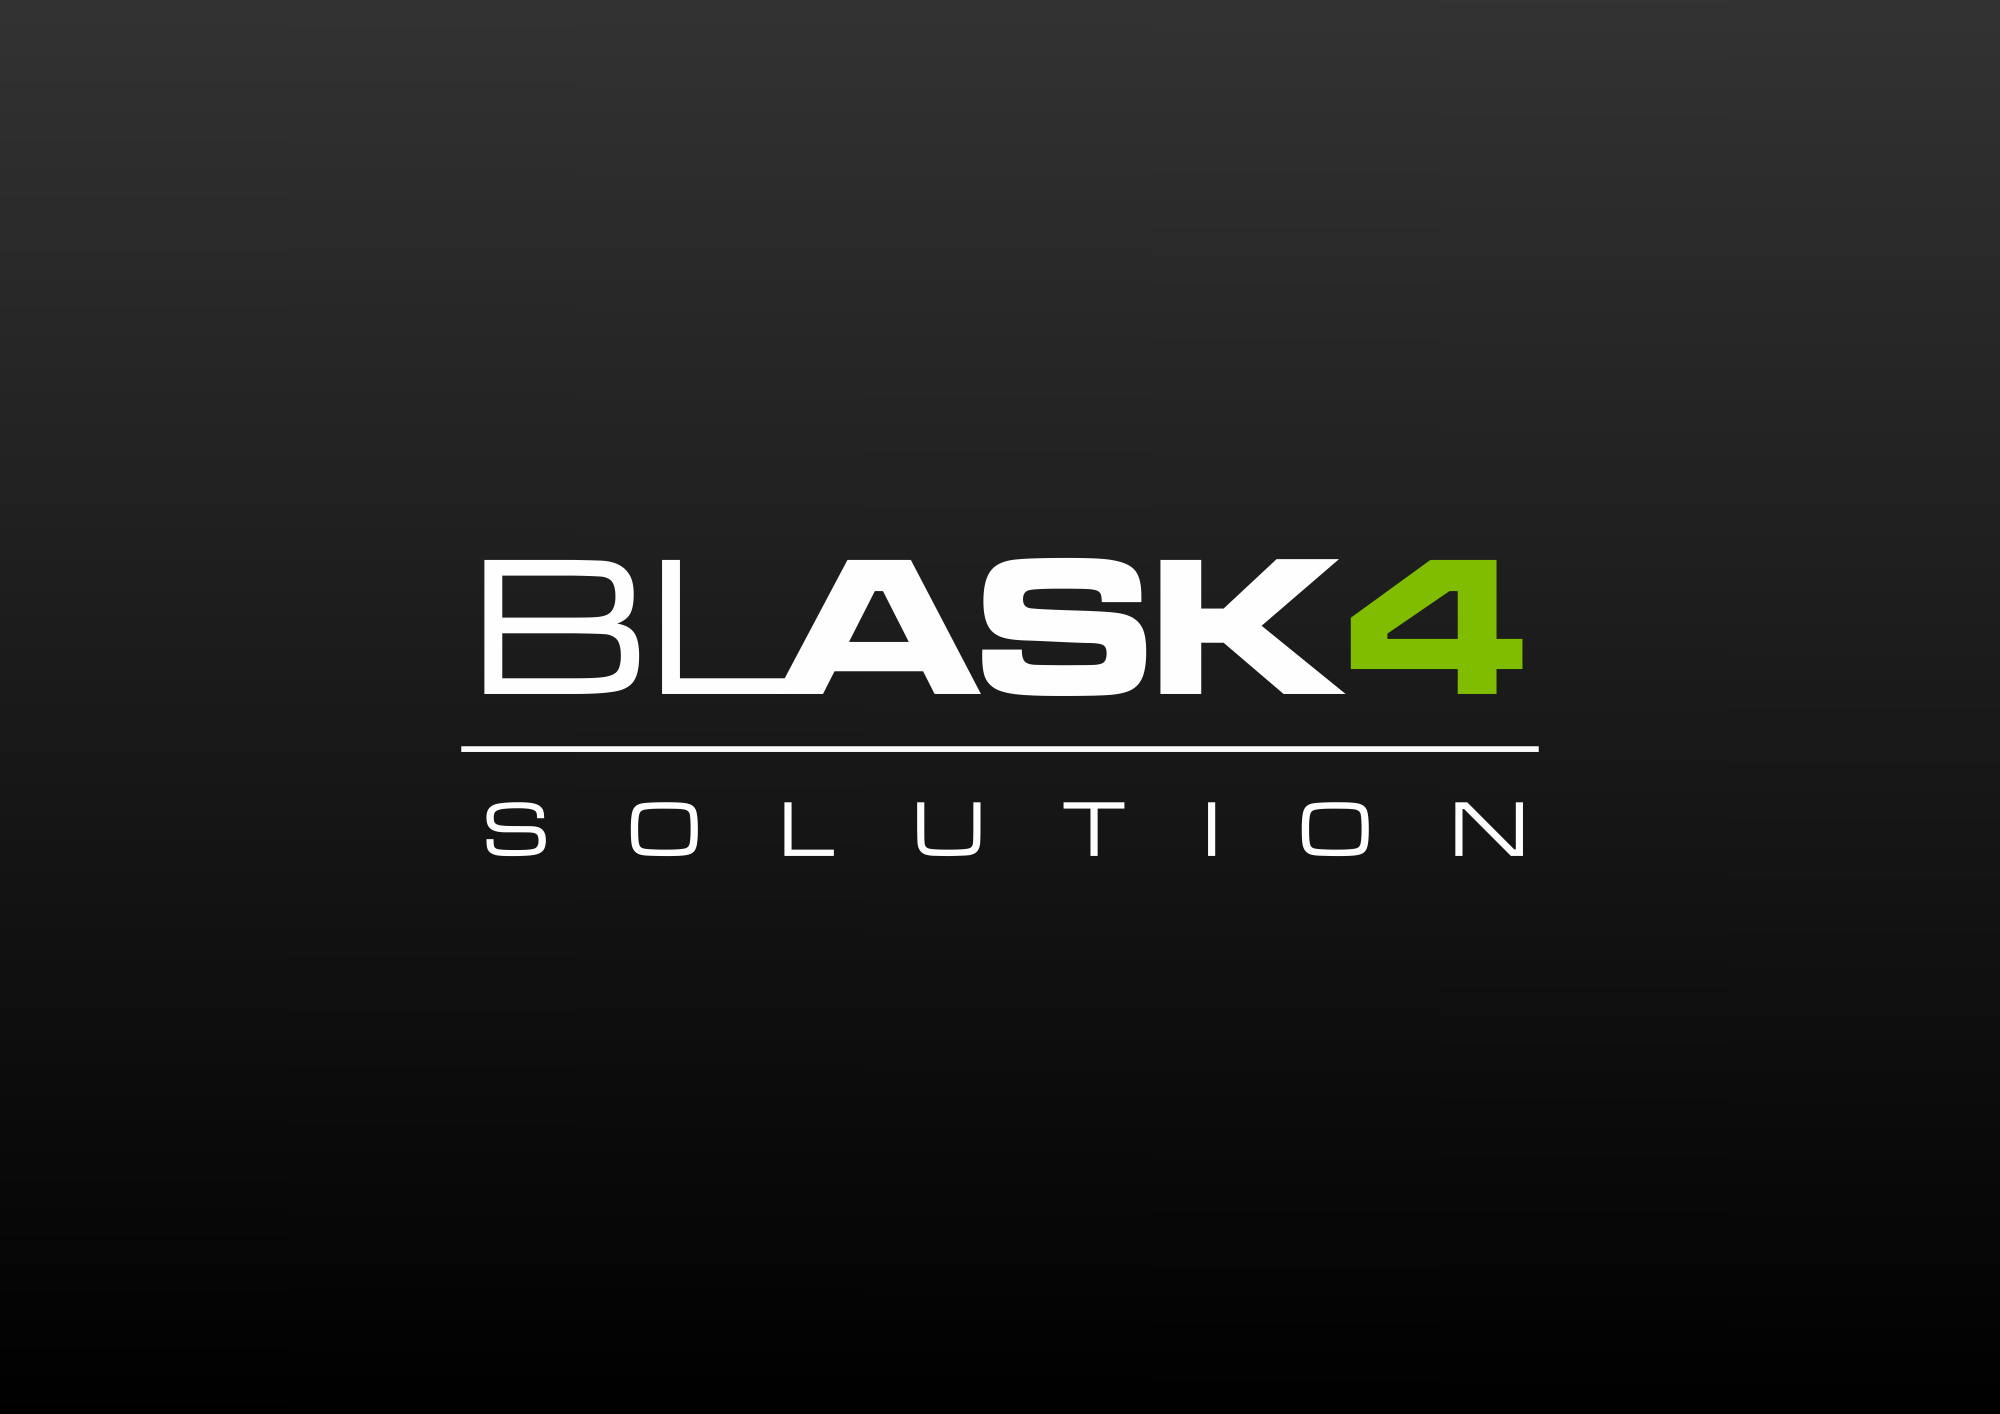 Logo Design blask4solution auf schwarzem Hintergrund. Modernes Design und Typografie.